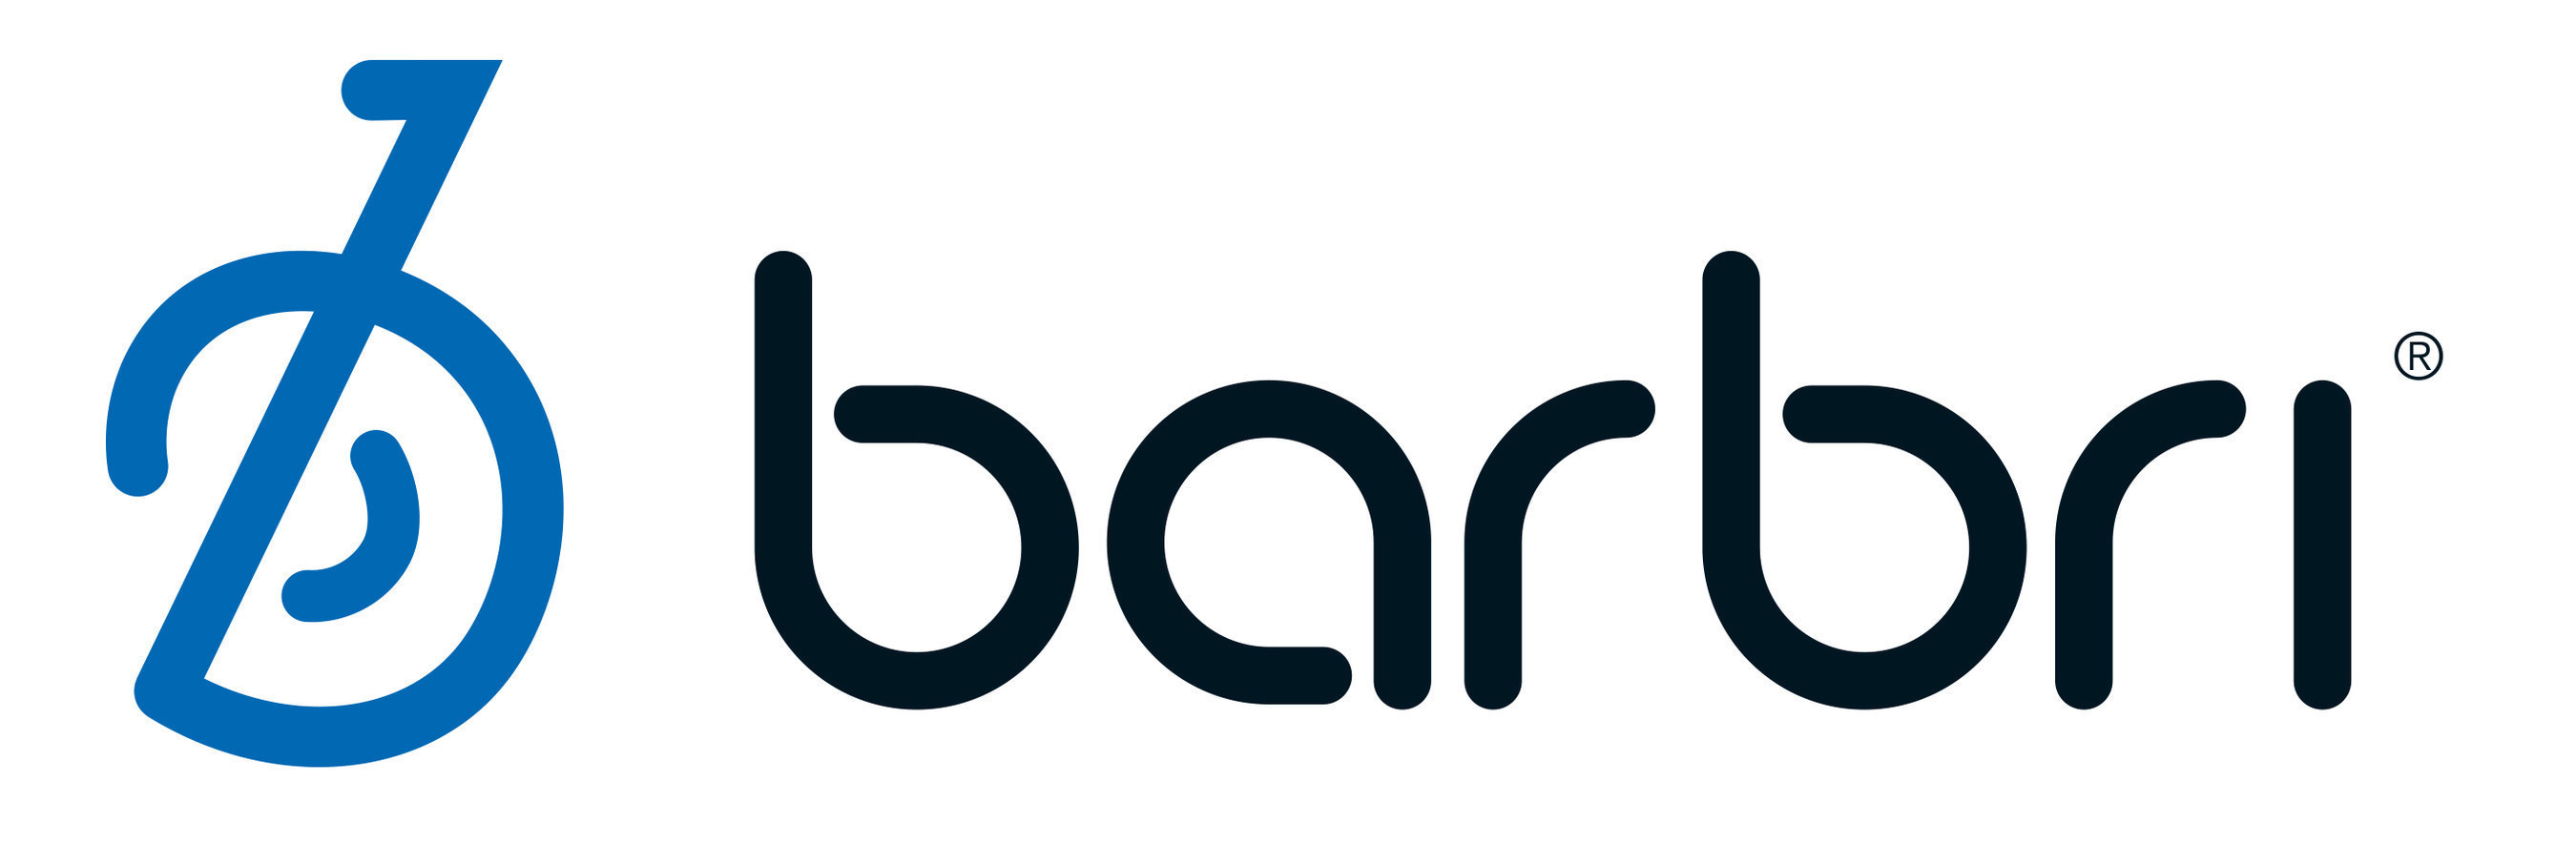 BARBRI Group logo